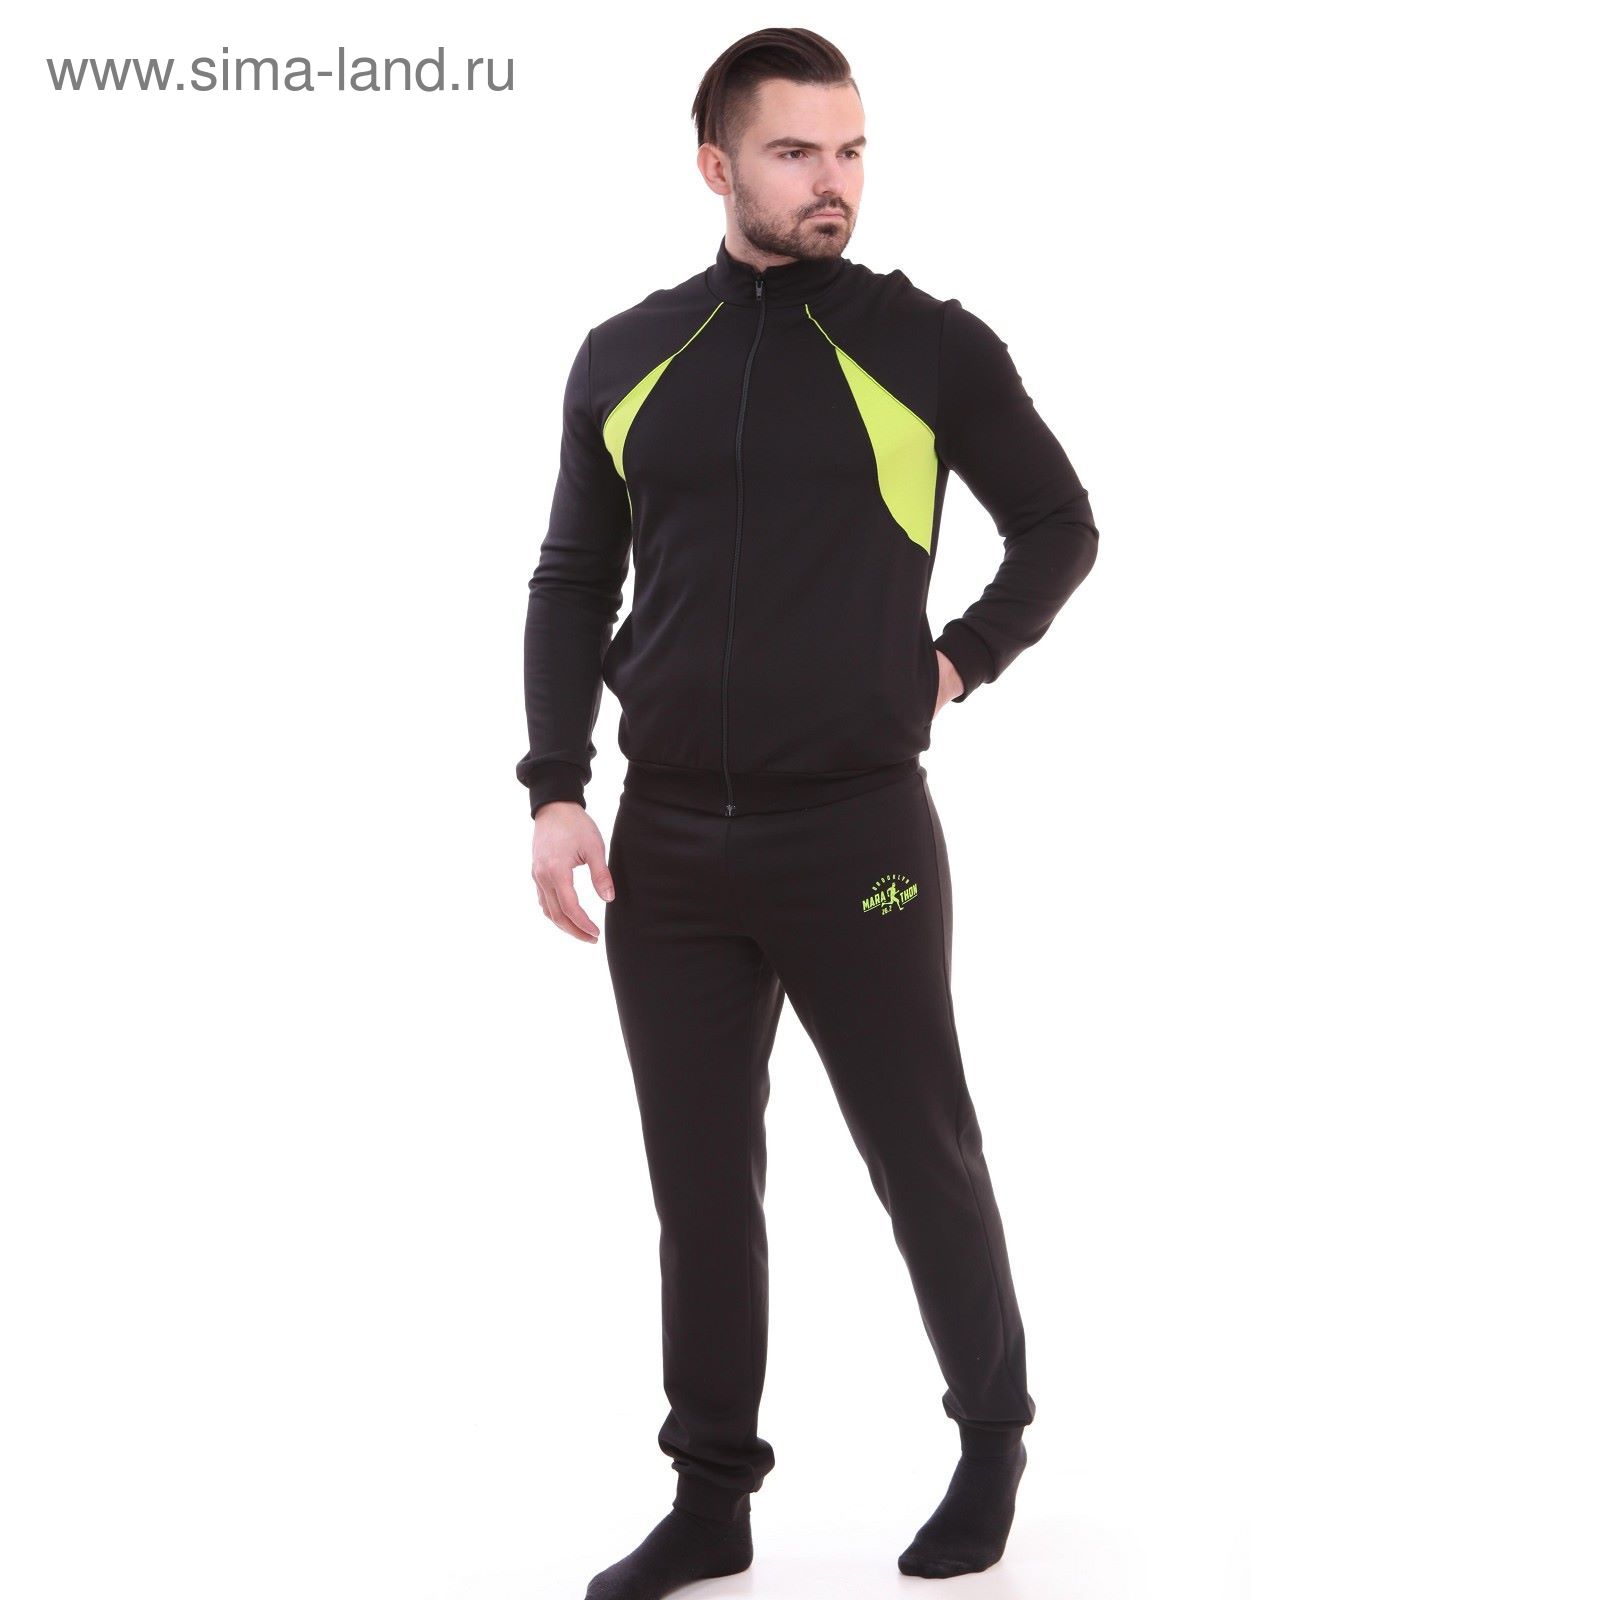 Костюм мужской (куртка+брюки) Р629014 черный, рост 170 см, р-р 52 (104)